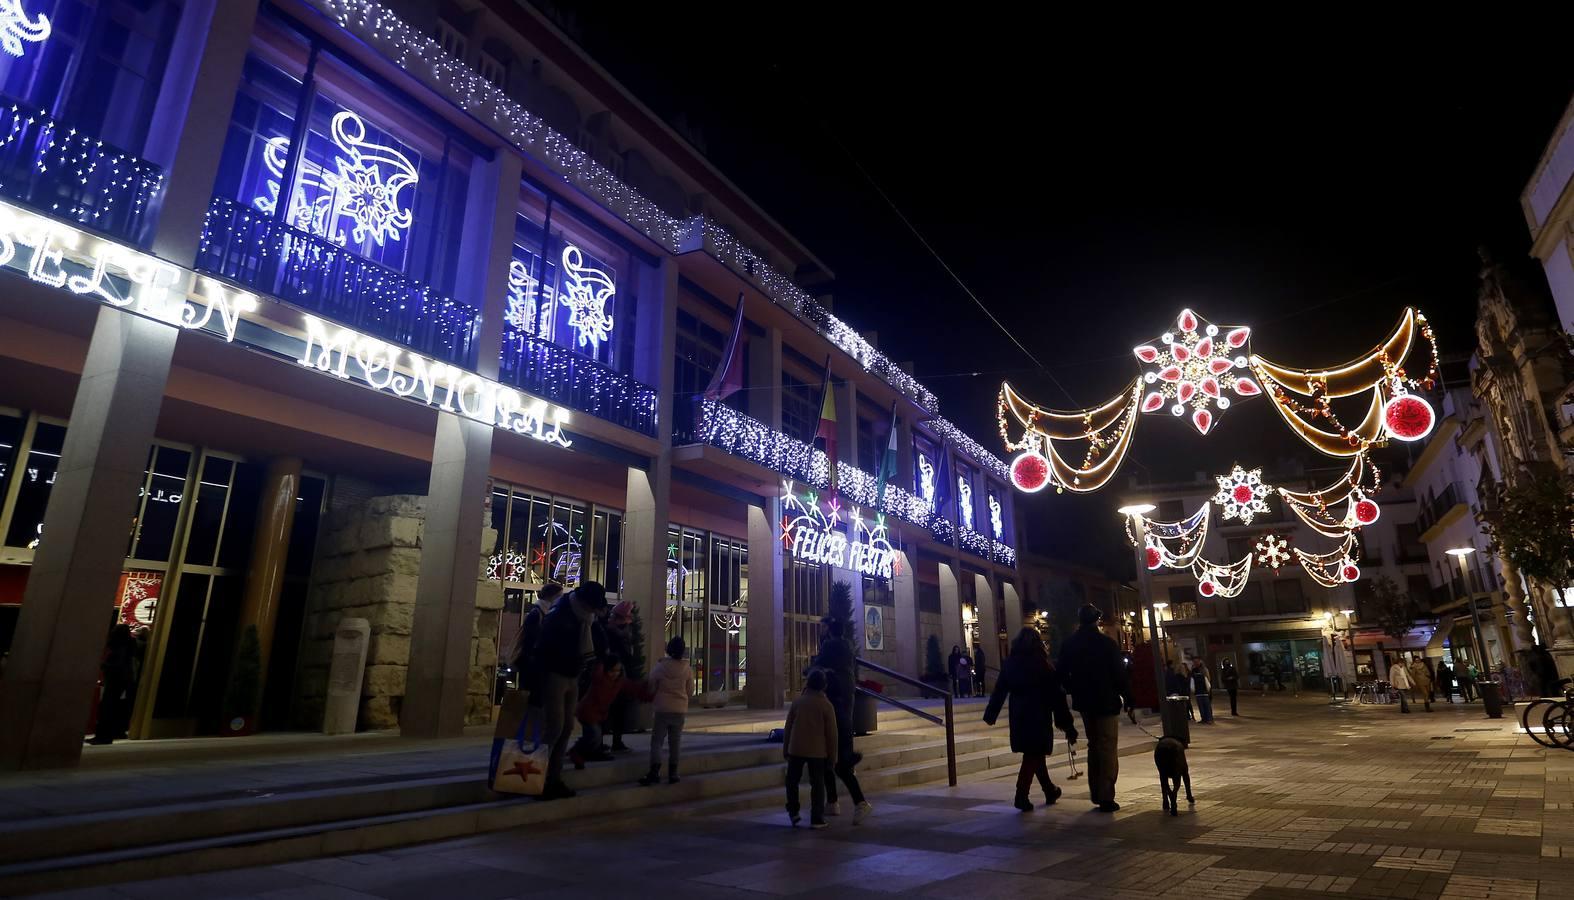 El alumbrado de Navidad de Córdoba, en imágenes